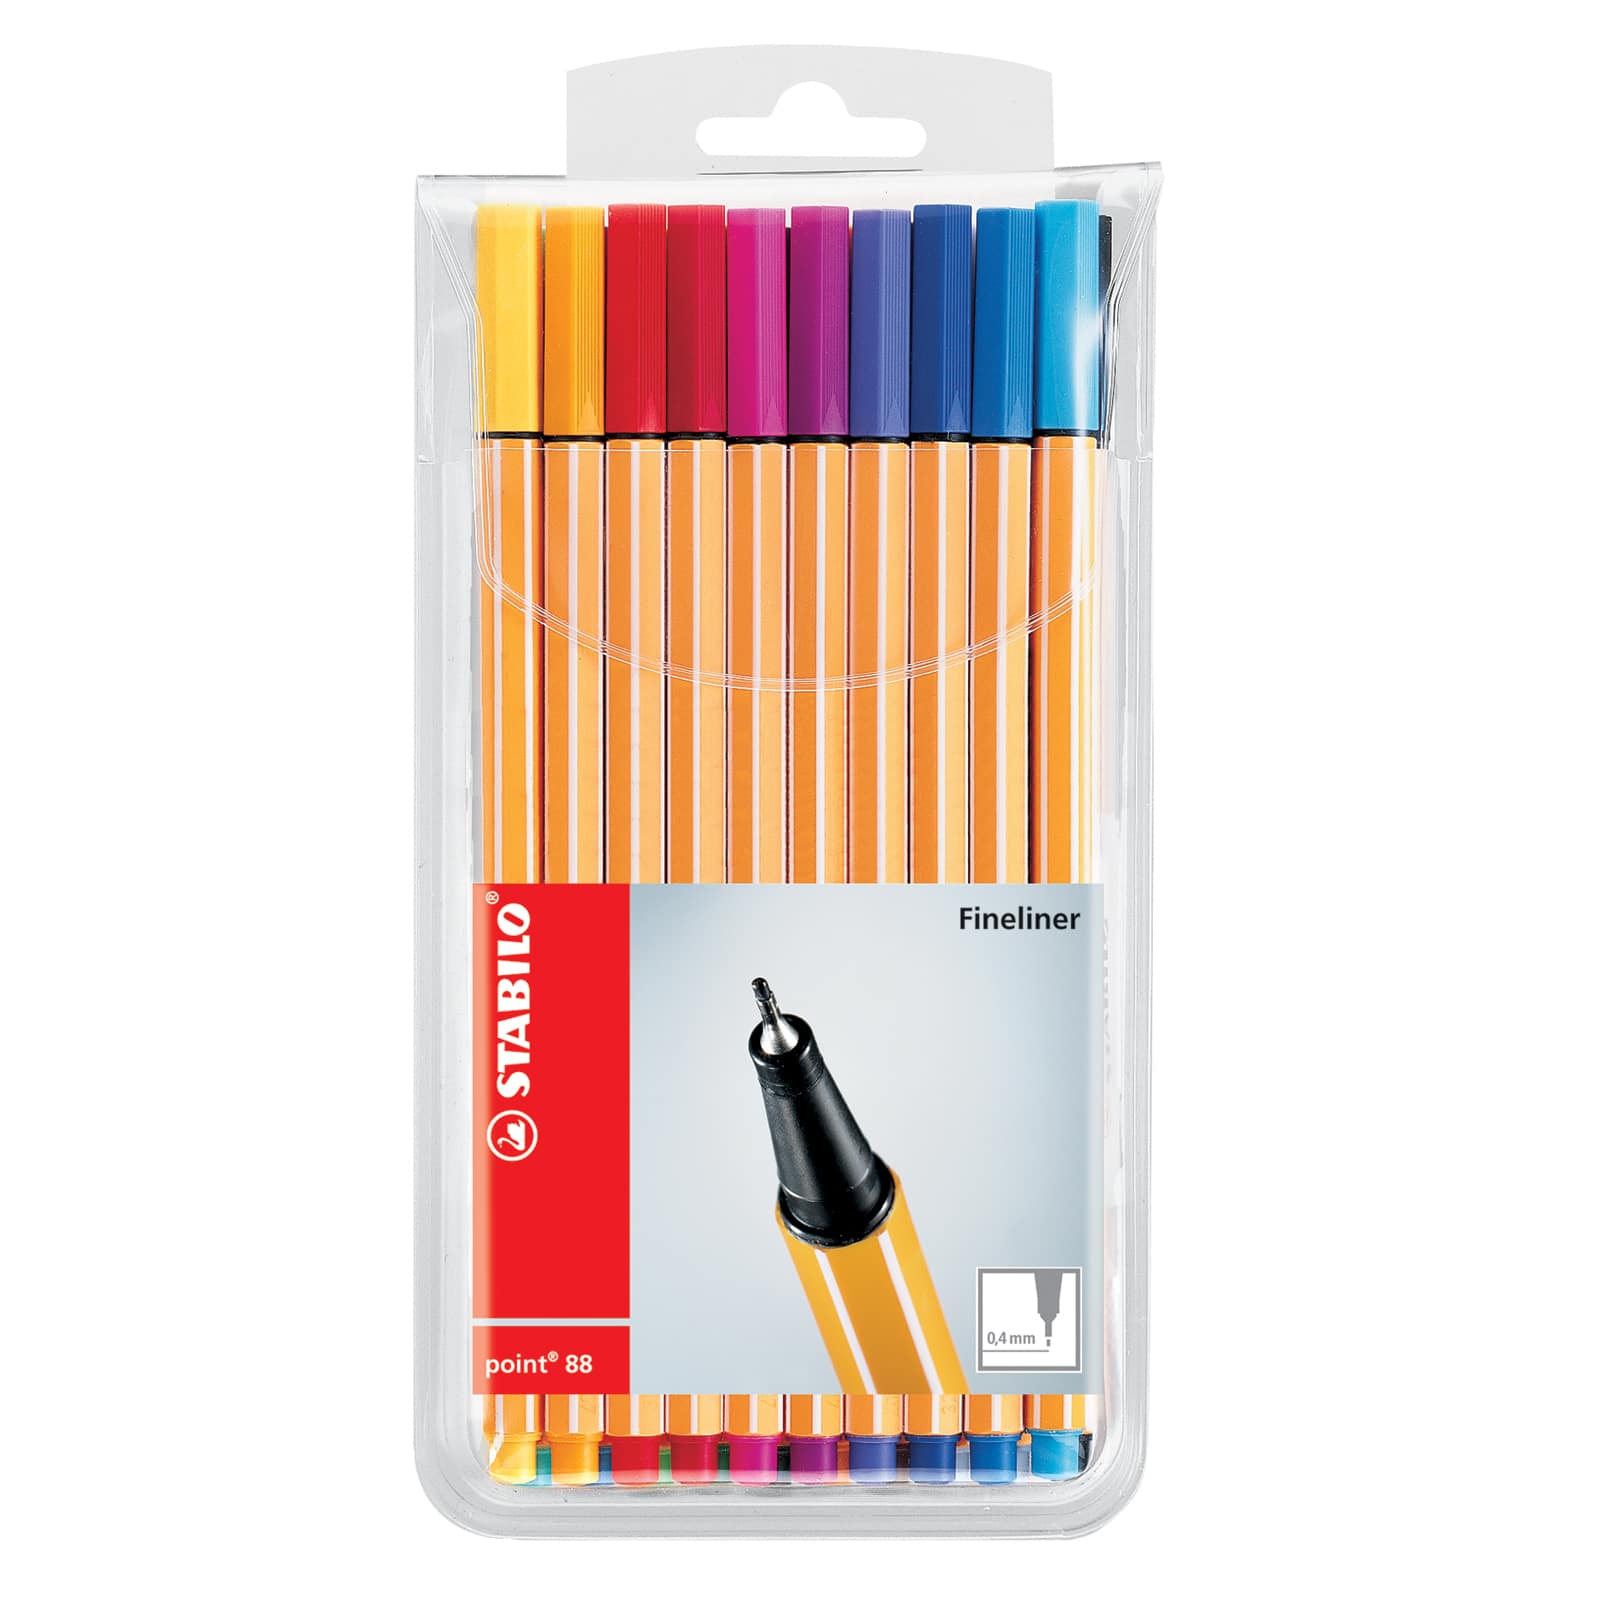 Stabilo Point 88 Fineliner Pen Sets